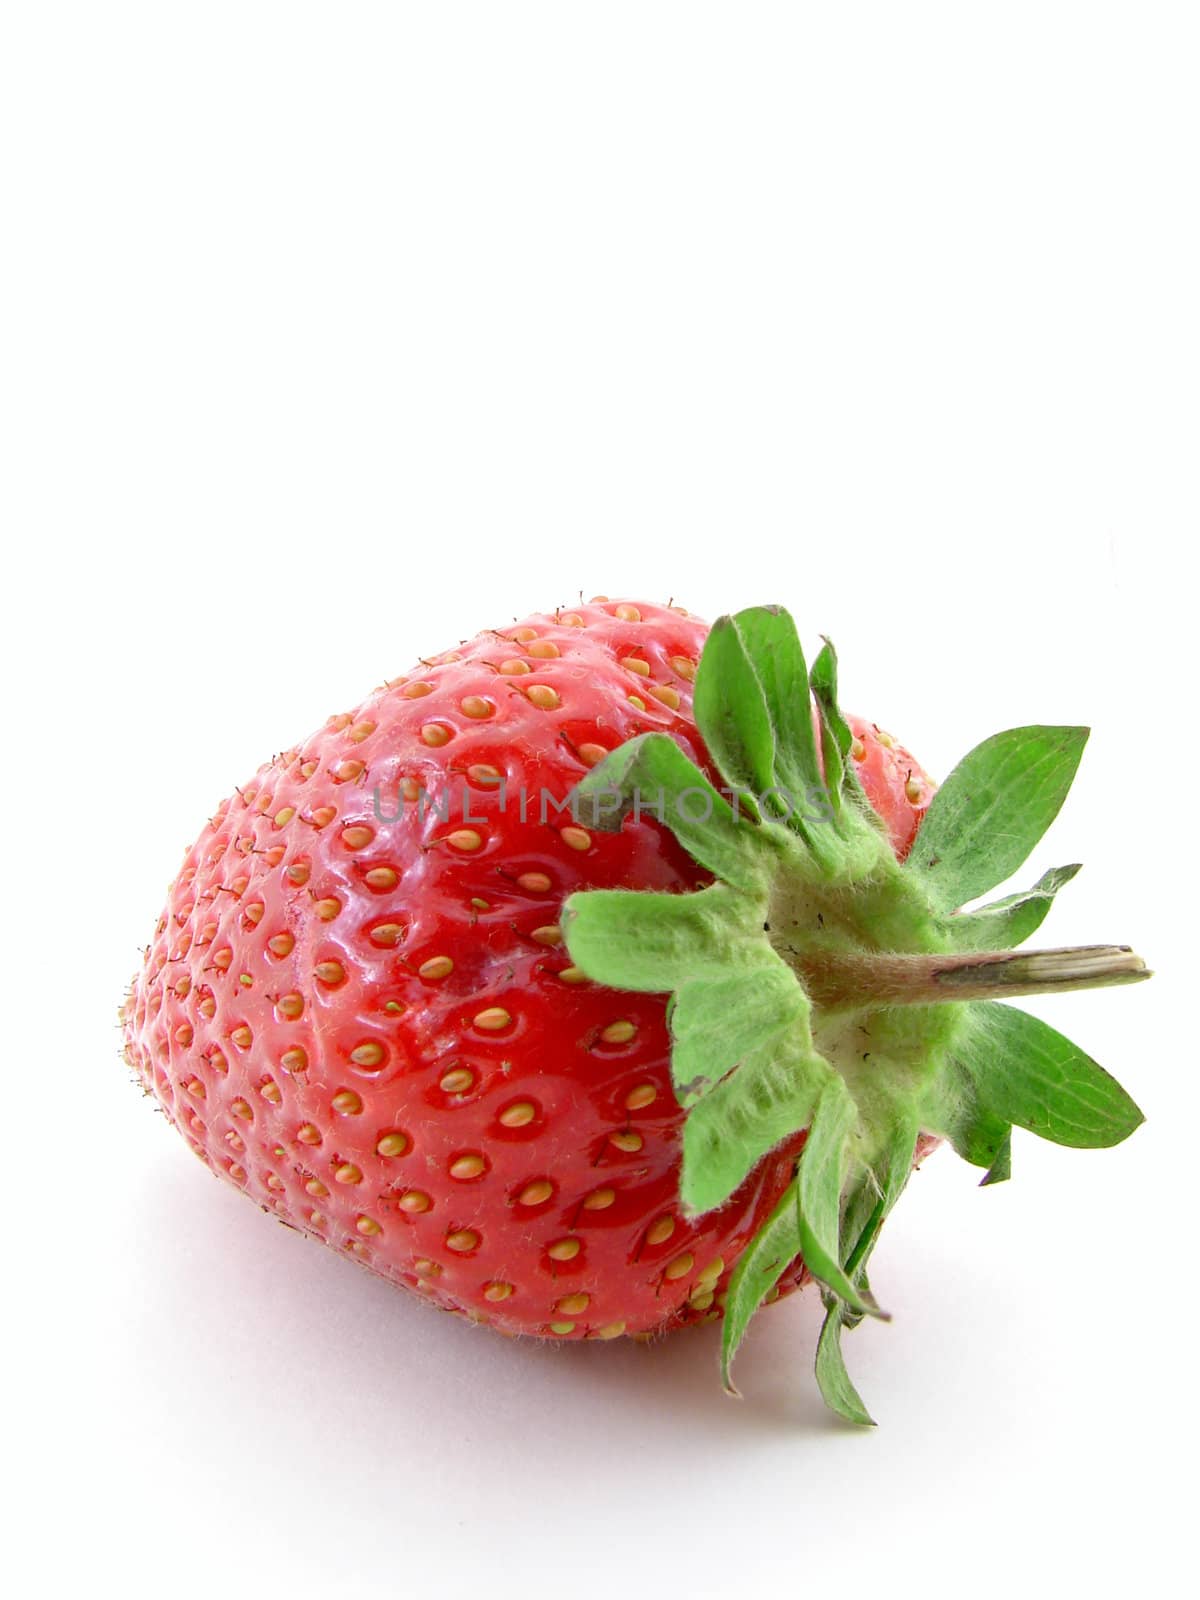 Strawberry by morchella